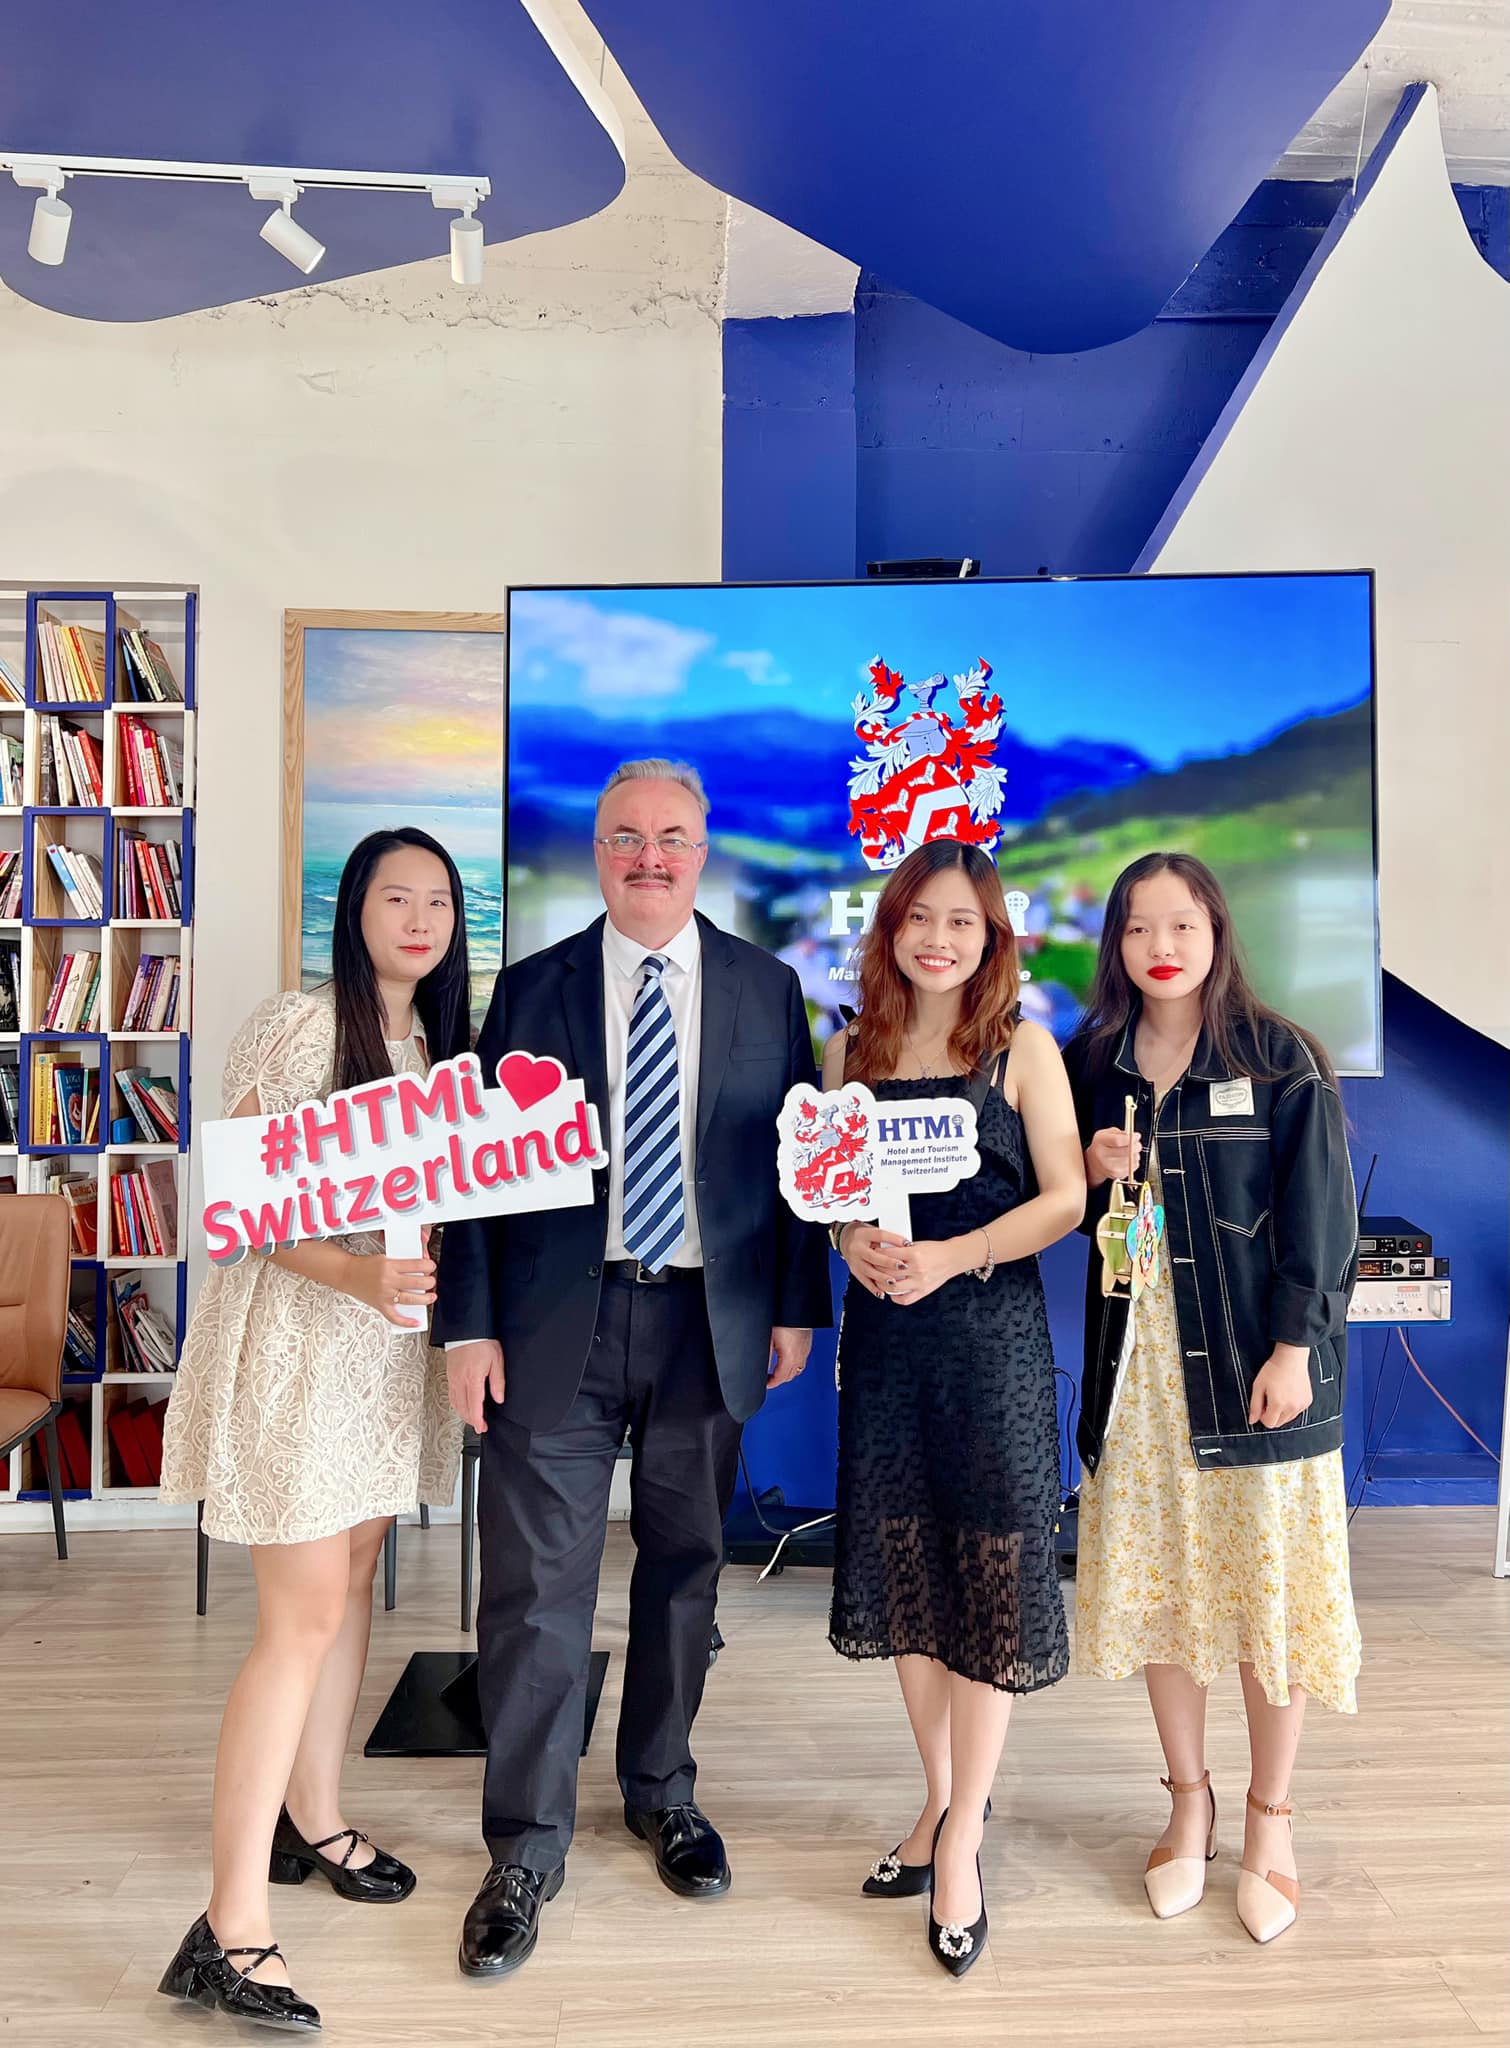 The Kingdom Edu chụp hình lưu niệm cùng ngài Ianlamour - CEO của chuỗi khách sạn Switsstouches, Ms. Thùy Dương – đại diện trường HTMi tại Việt Nam 